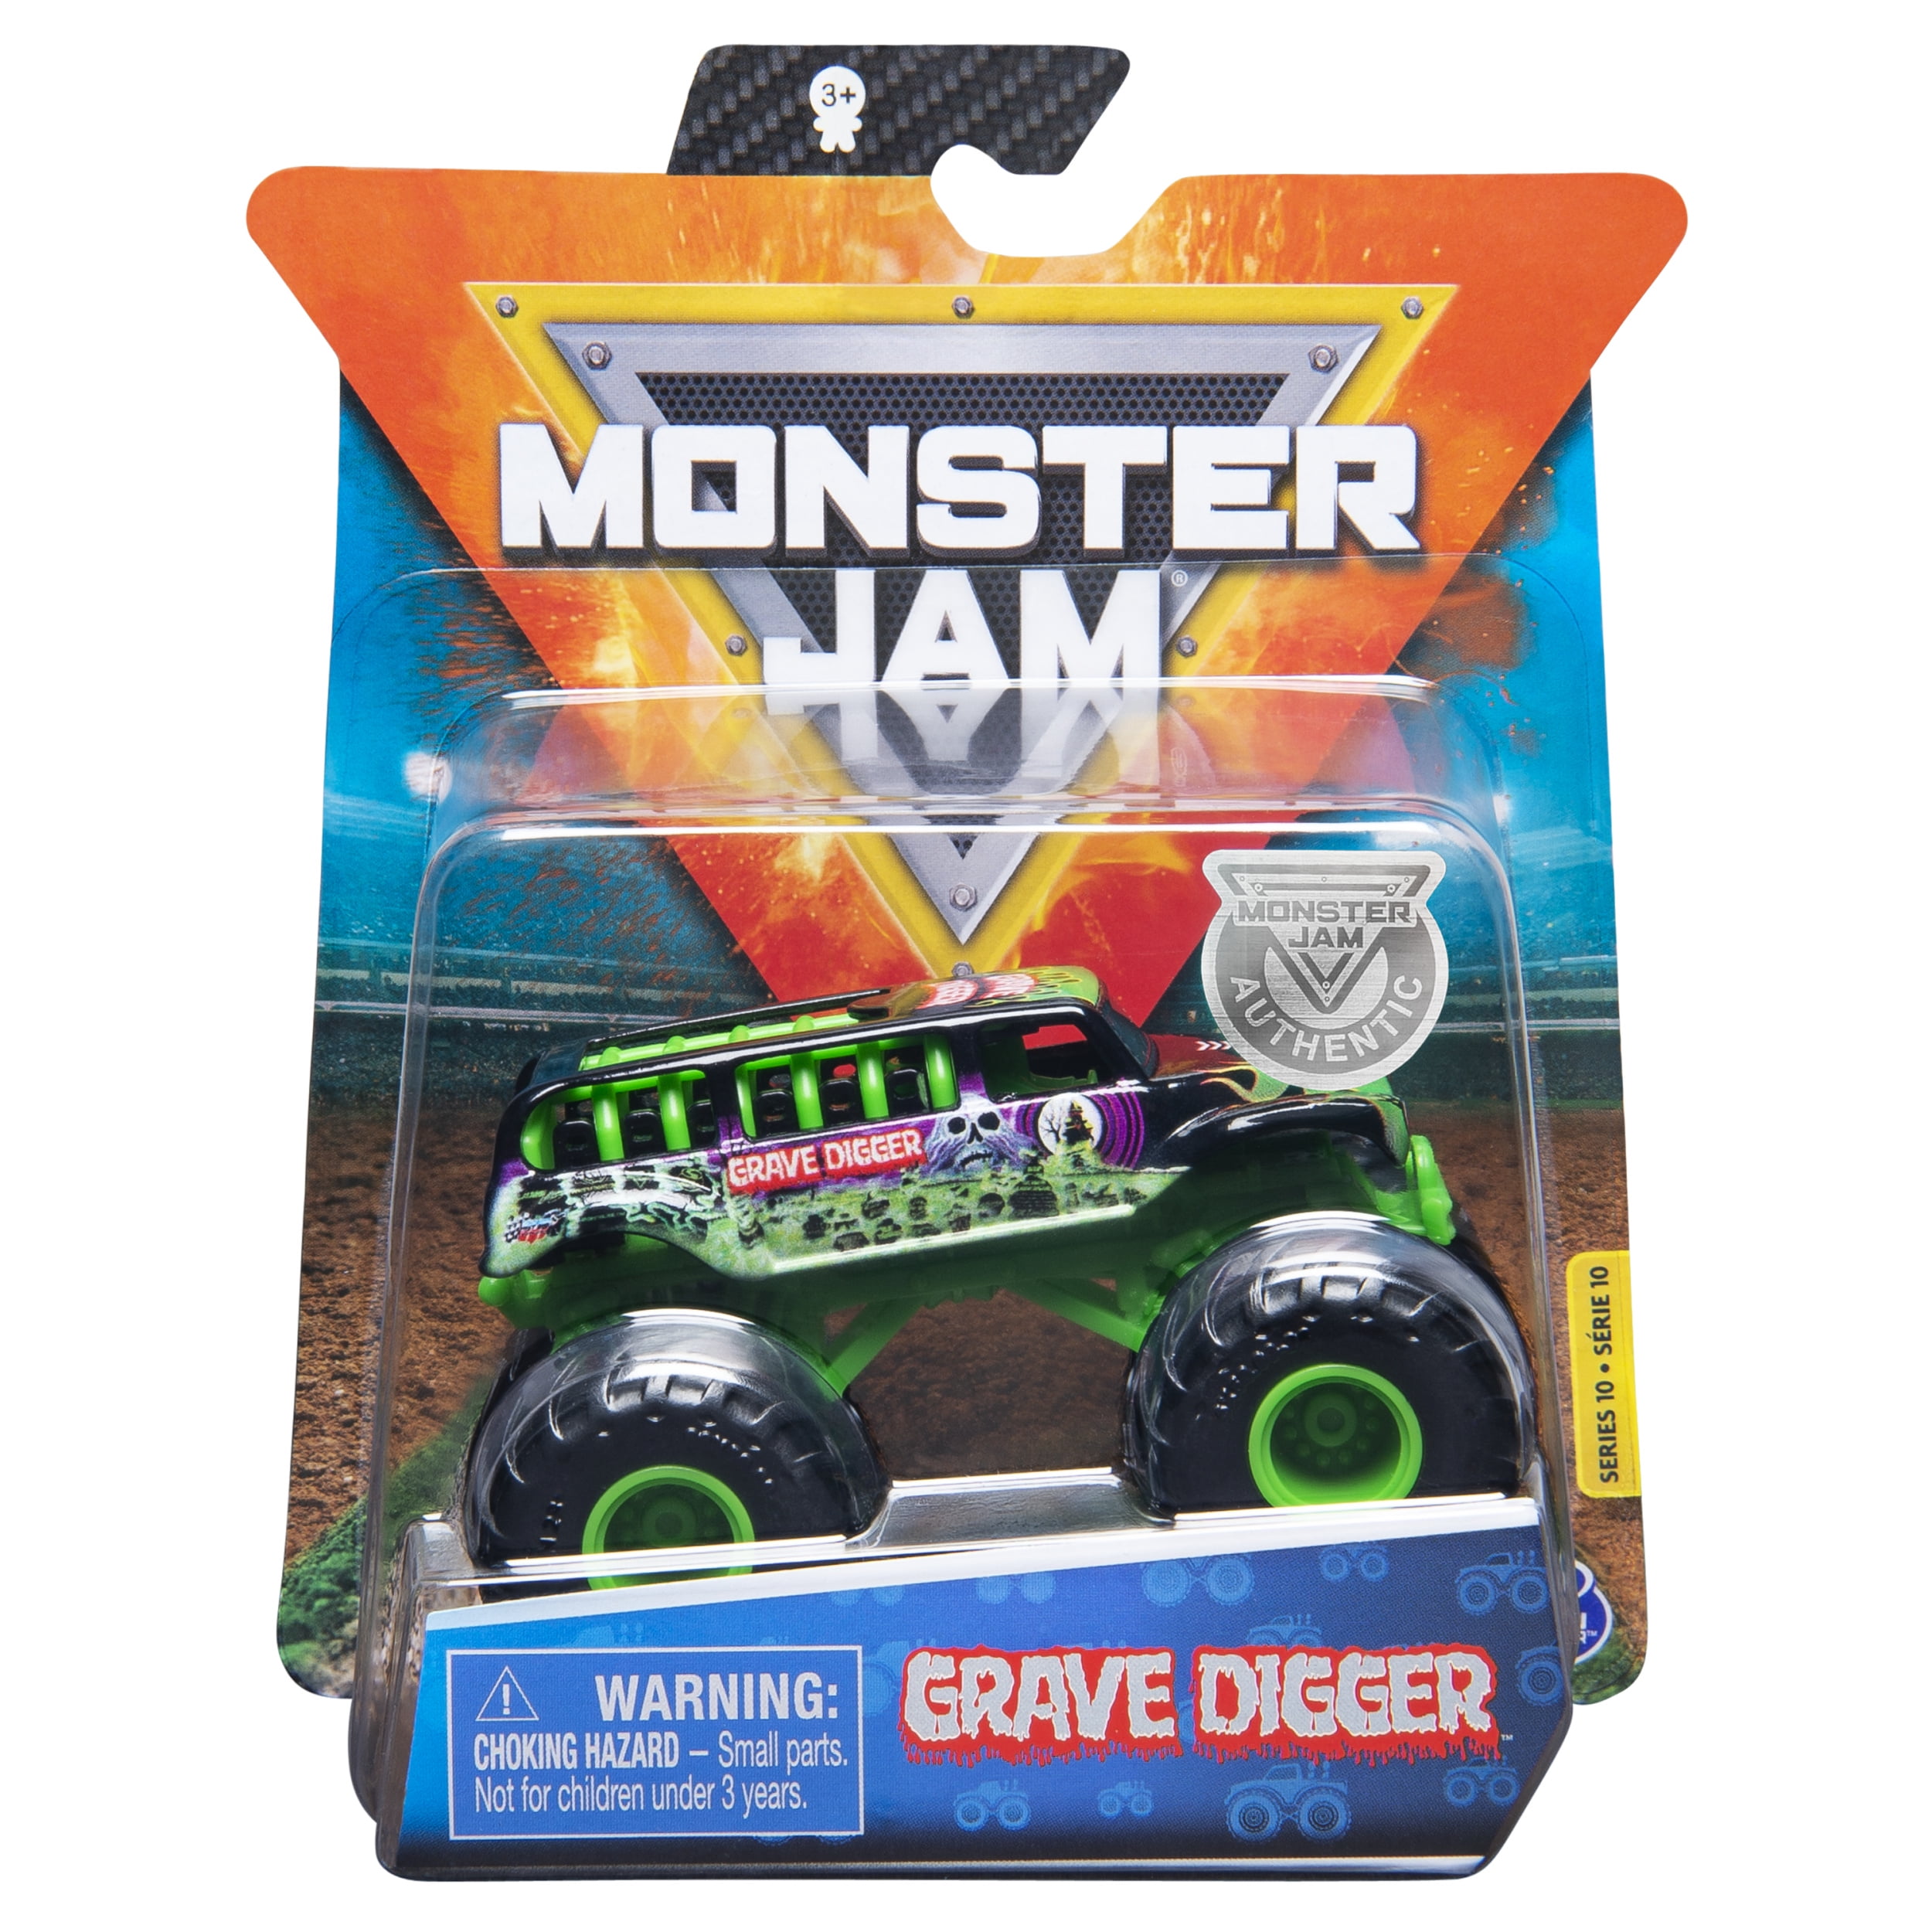 Old Monster Jam Toys - www.inf-inet.com